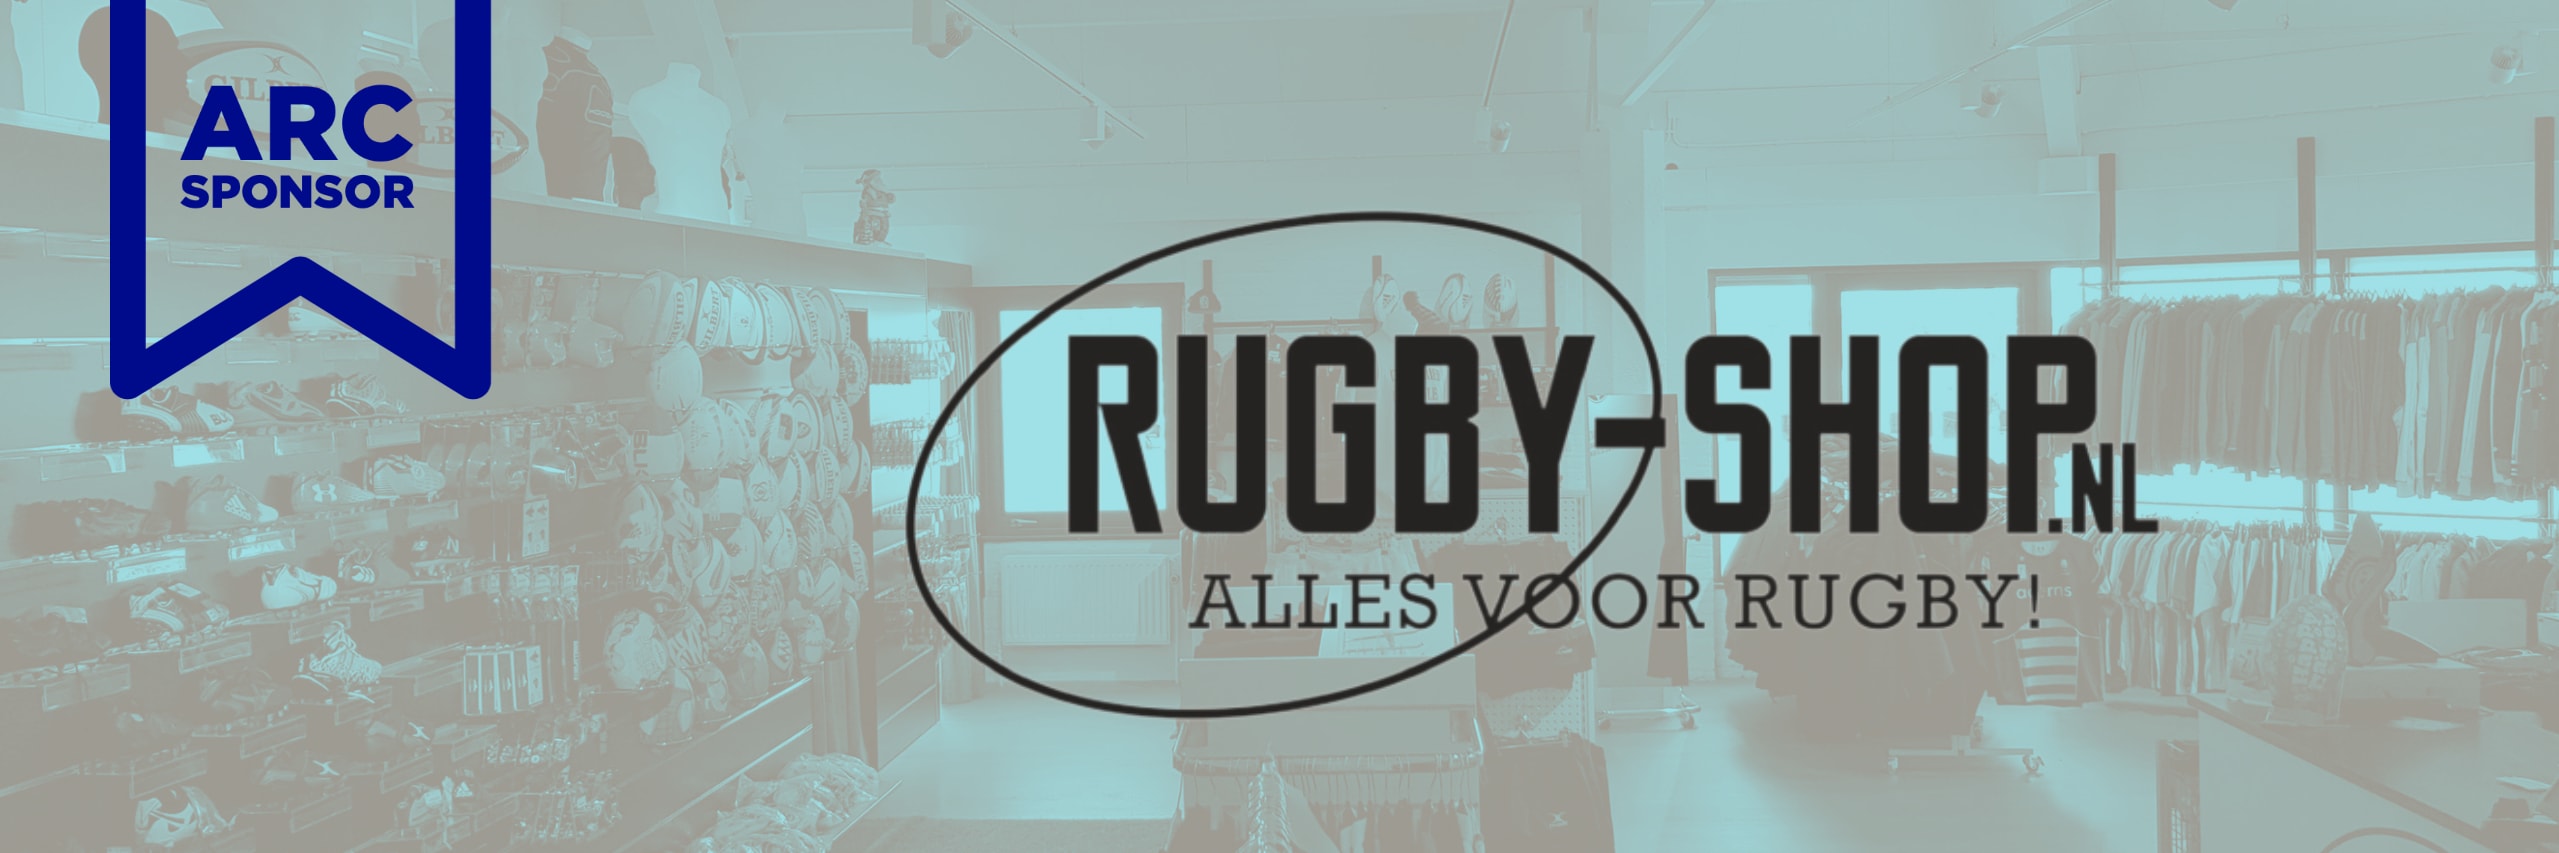 Rugby-shop.nl banner winkel arc sponsor